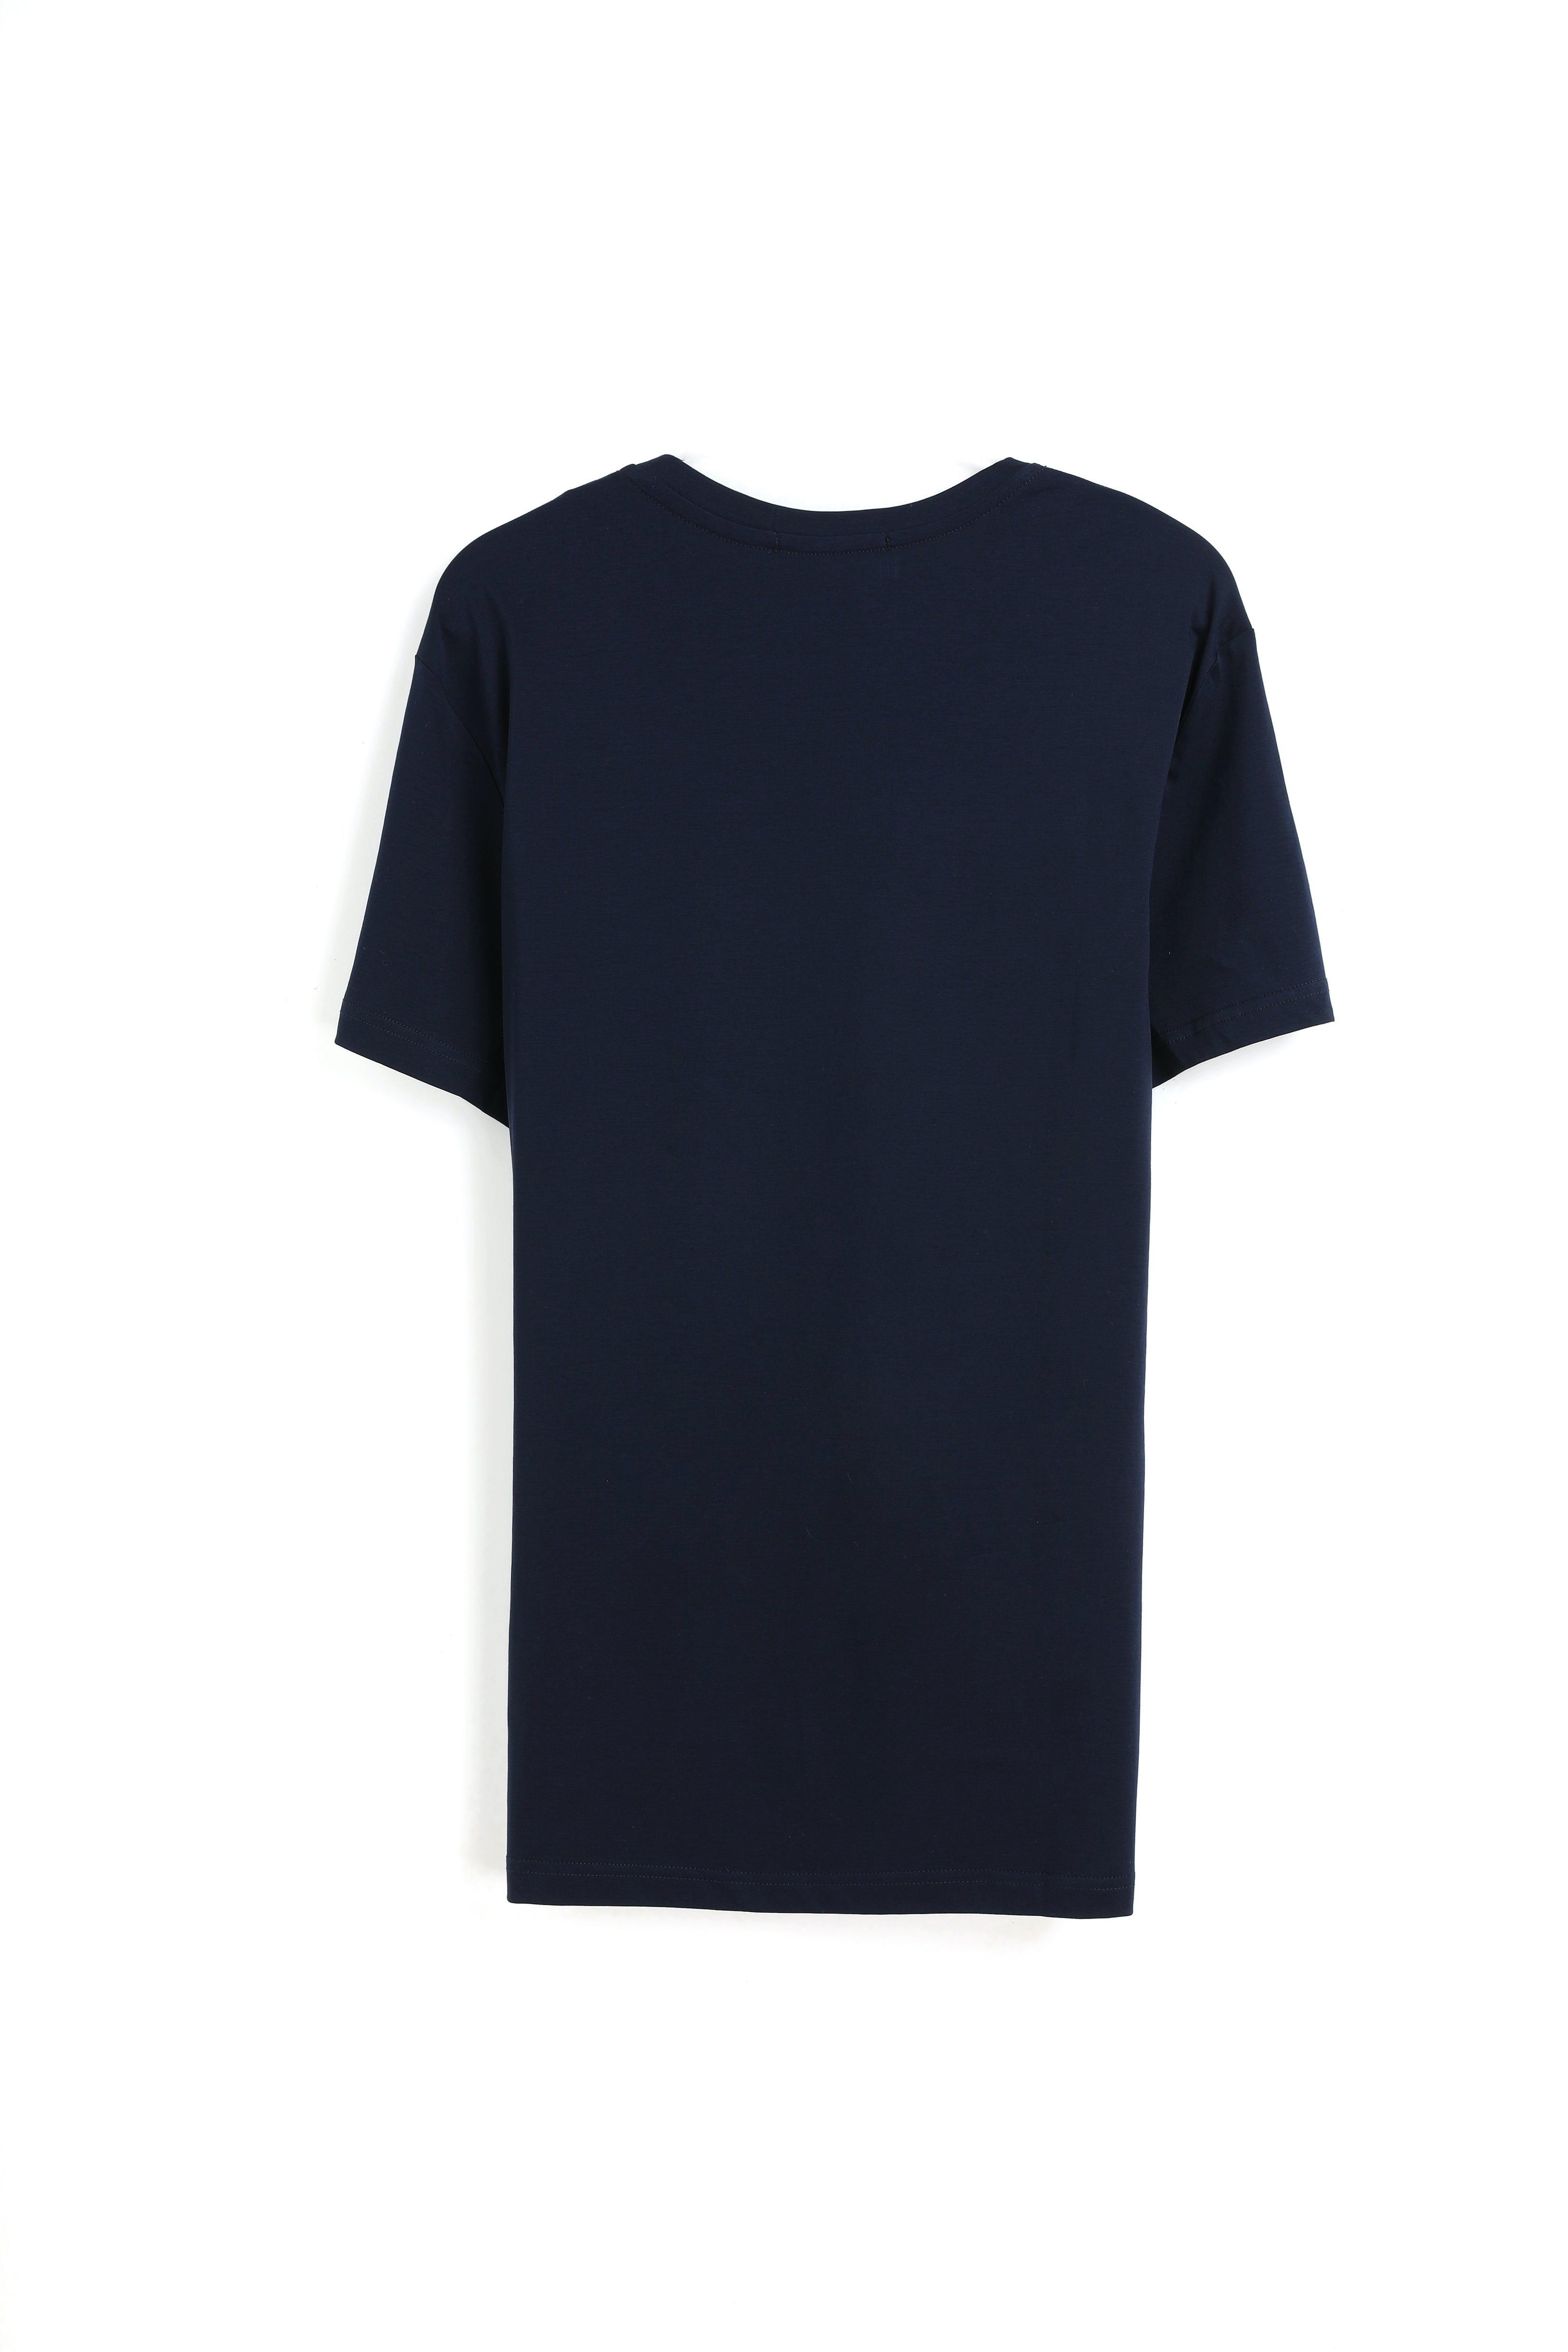 Bellemere New York  Herren-T-Shirt aus Baumwolle mit Rundhalsausschnitt, 185 g 